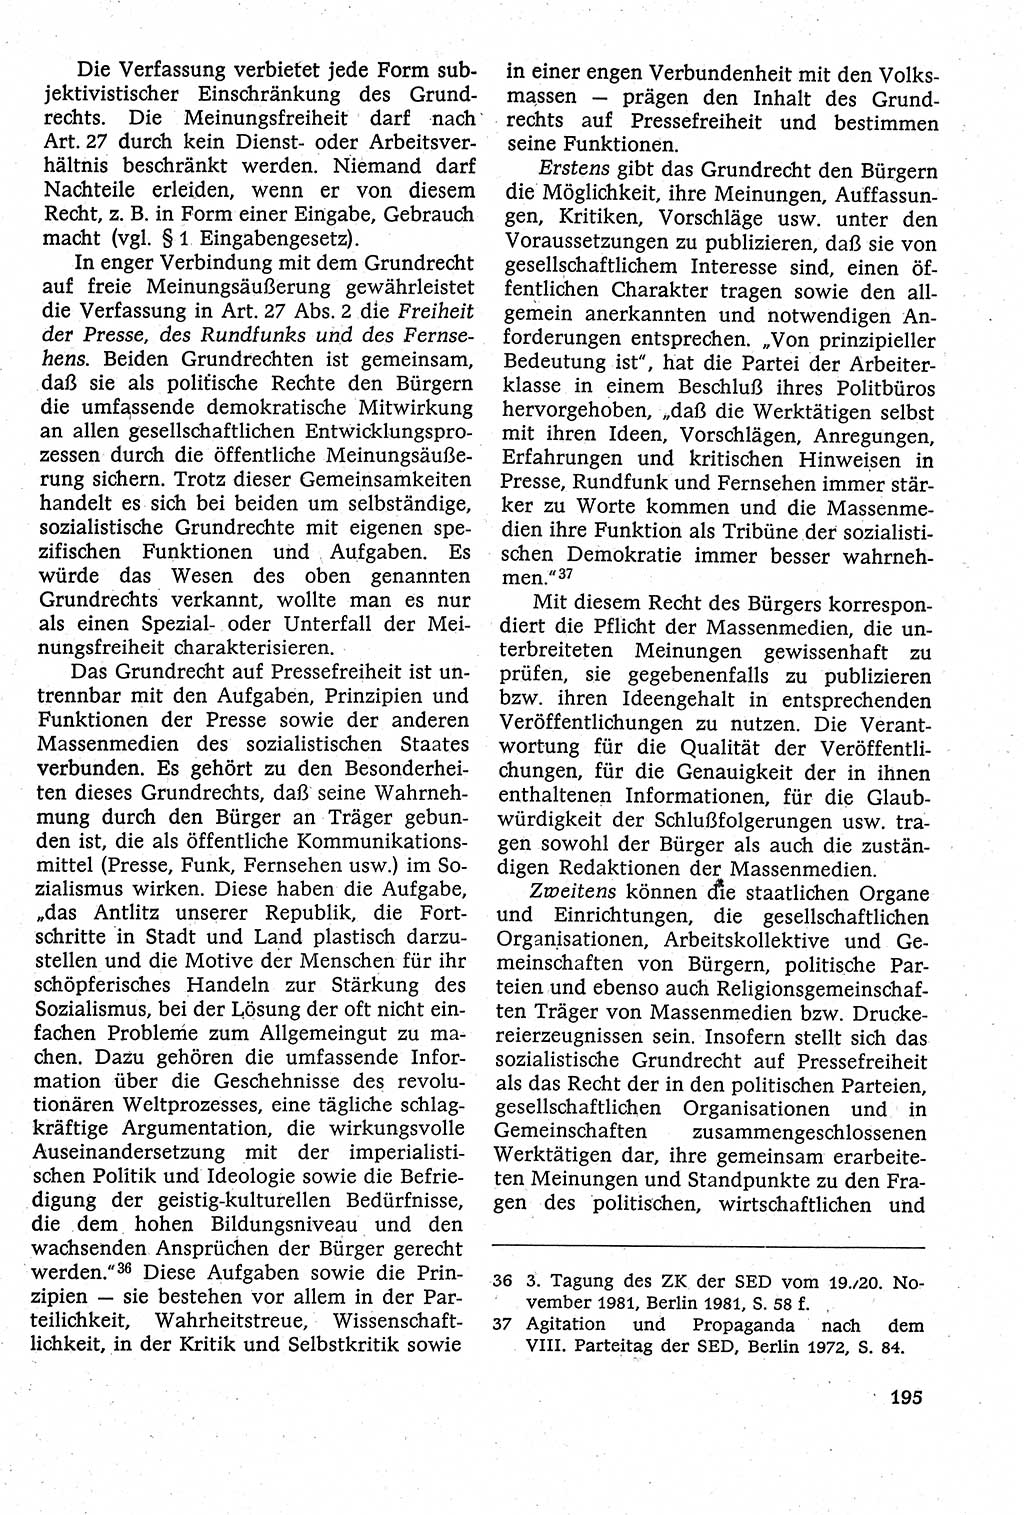 Staatsrecht der DDR [Deutsche Demokratische Republik (DDR)], Lehrbuch 1984, Seite 195 (St.-R. DDR Lb. 1984, S. 195)